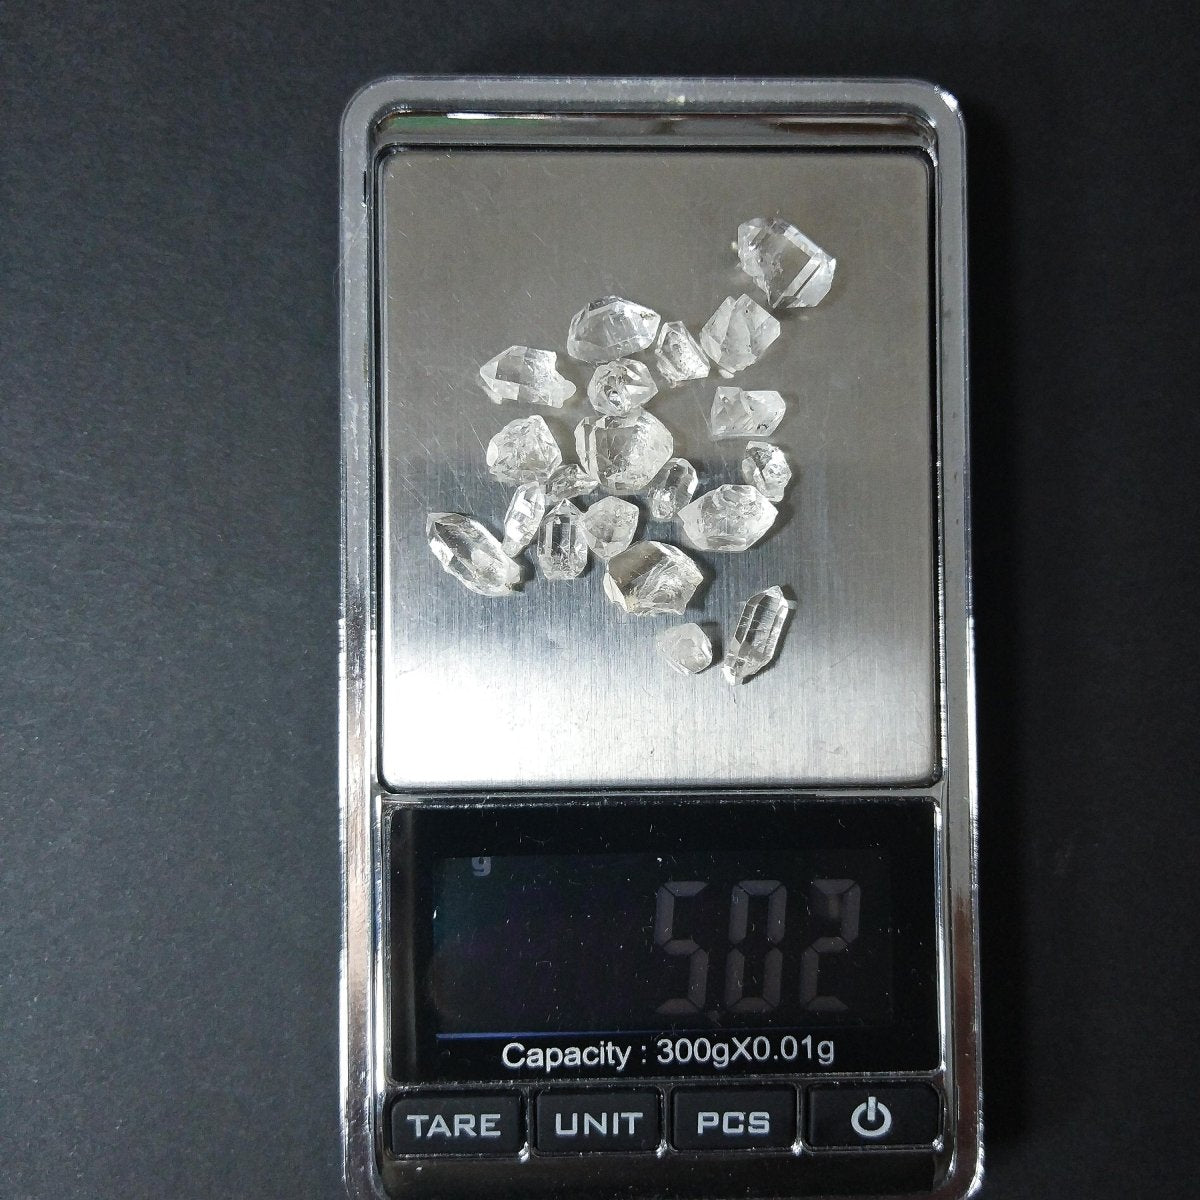 Παρτίδα Diamond Quartz 3-10mm 5gr Lots - Anima Mundi Crystals